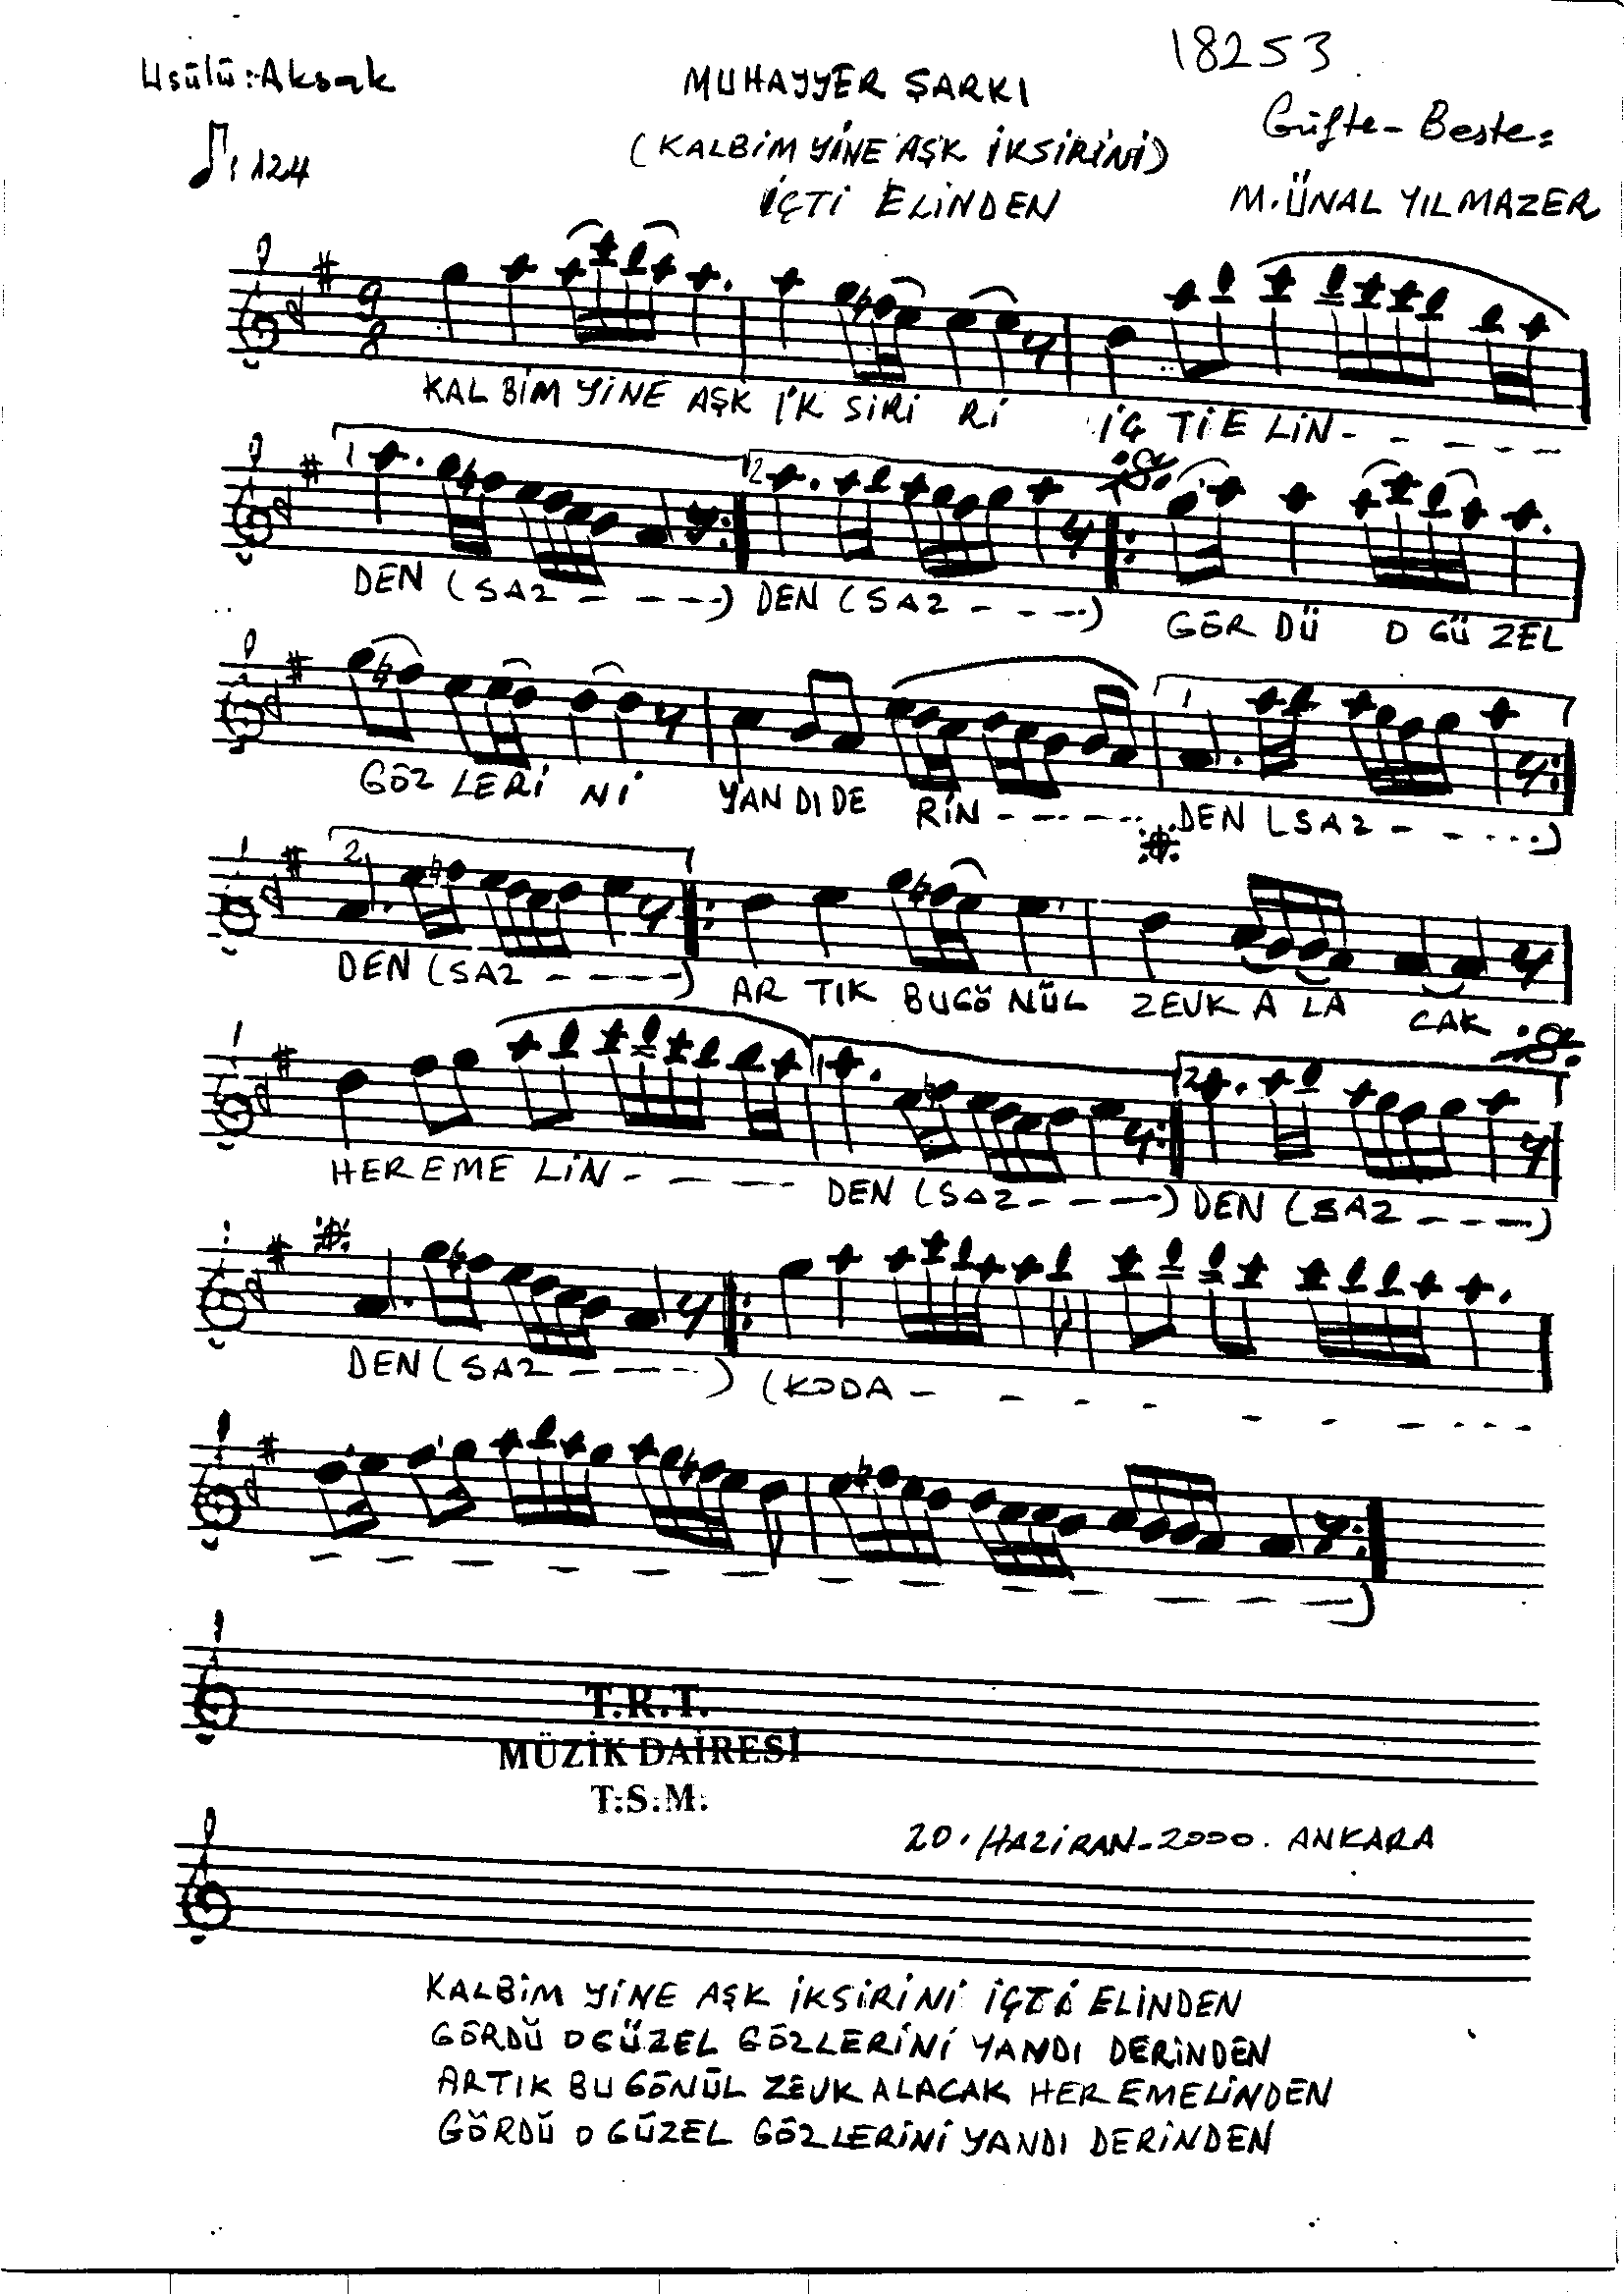 Muhayyer - Şarkı - Mustafa Ünal Yılmazer - Sayfa 1